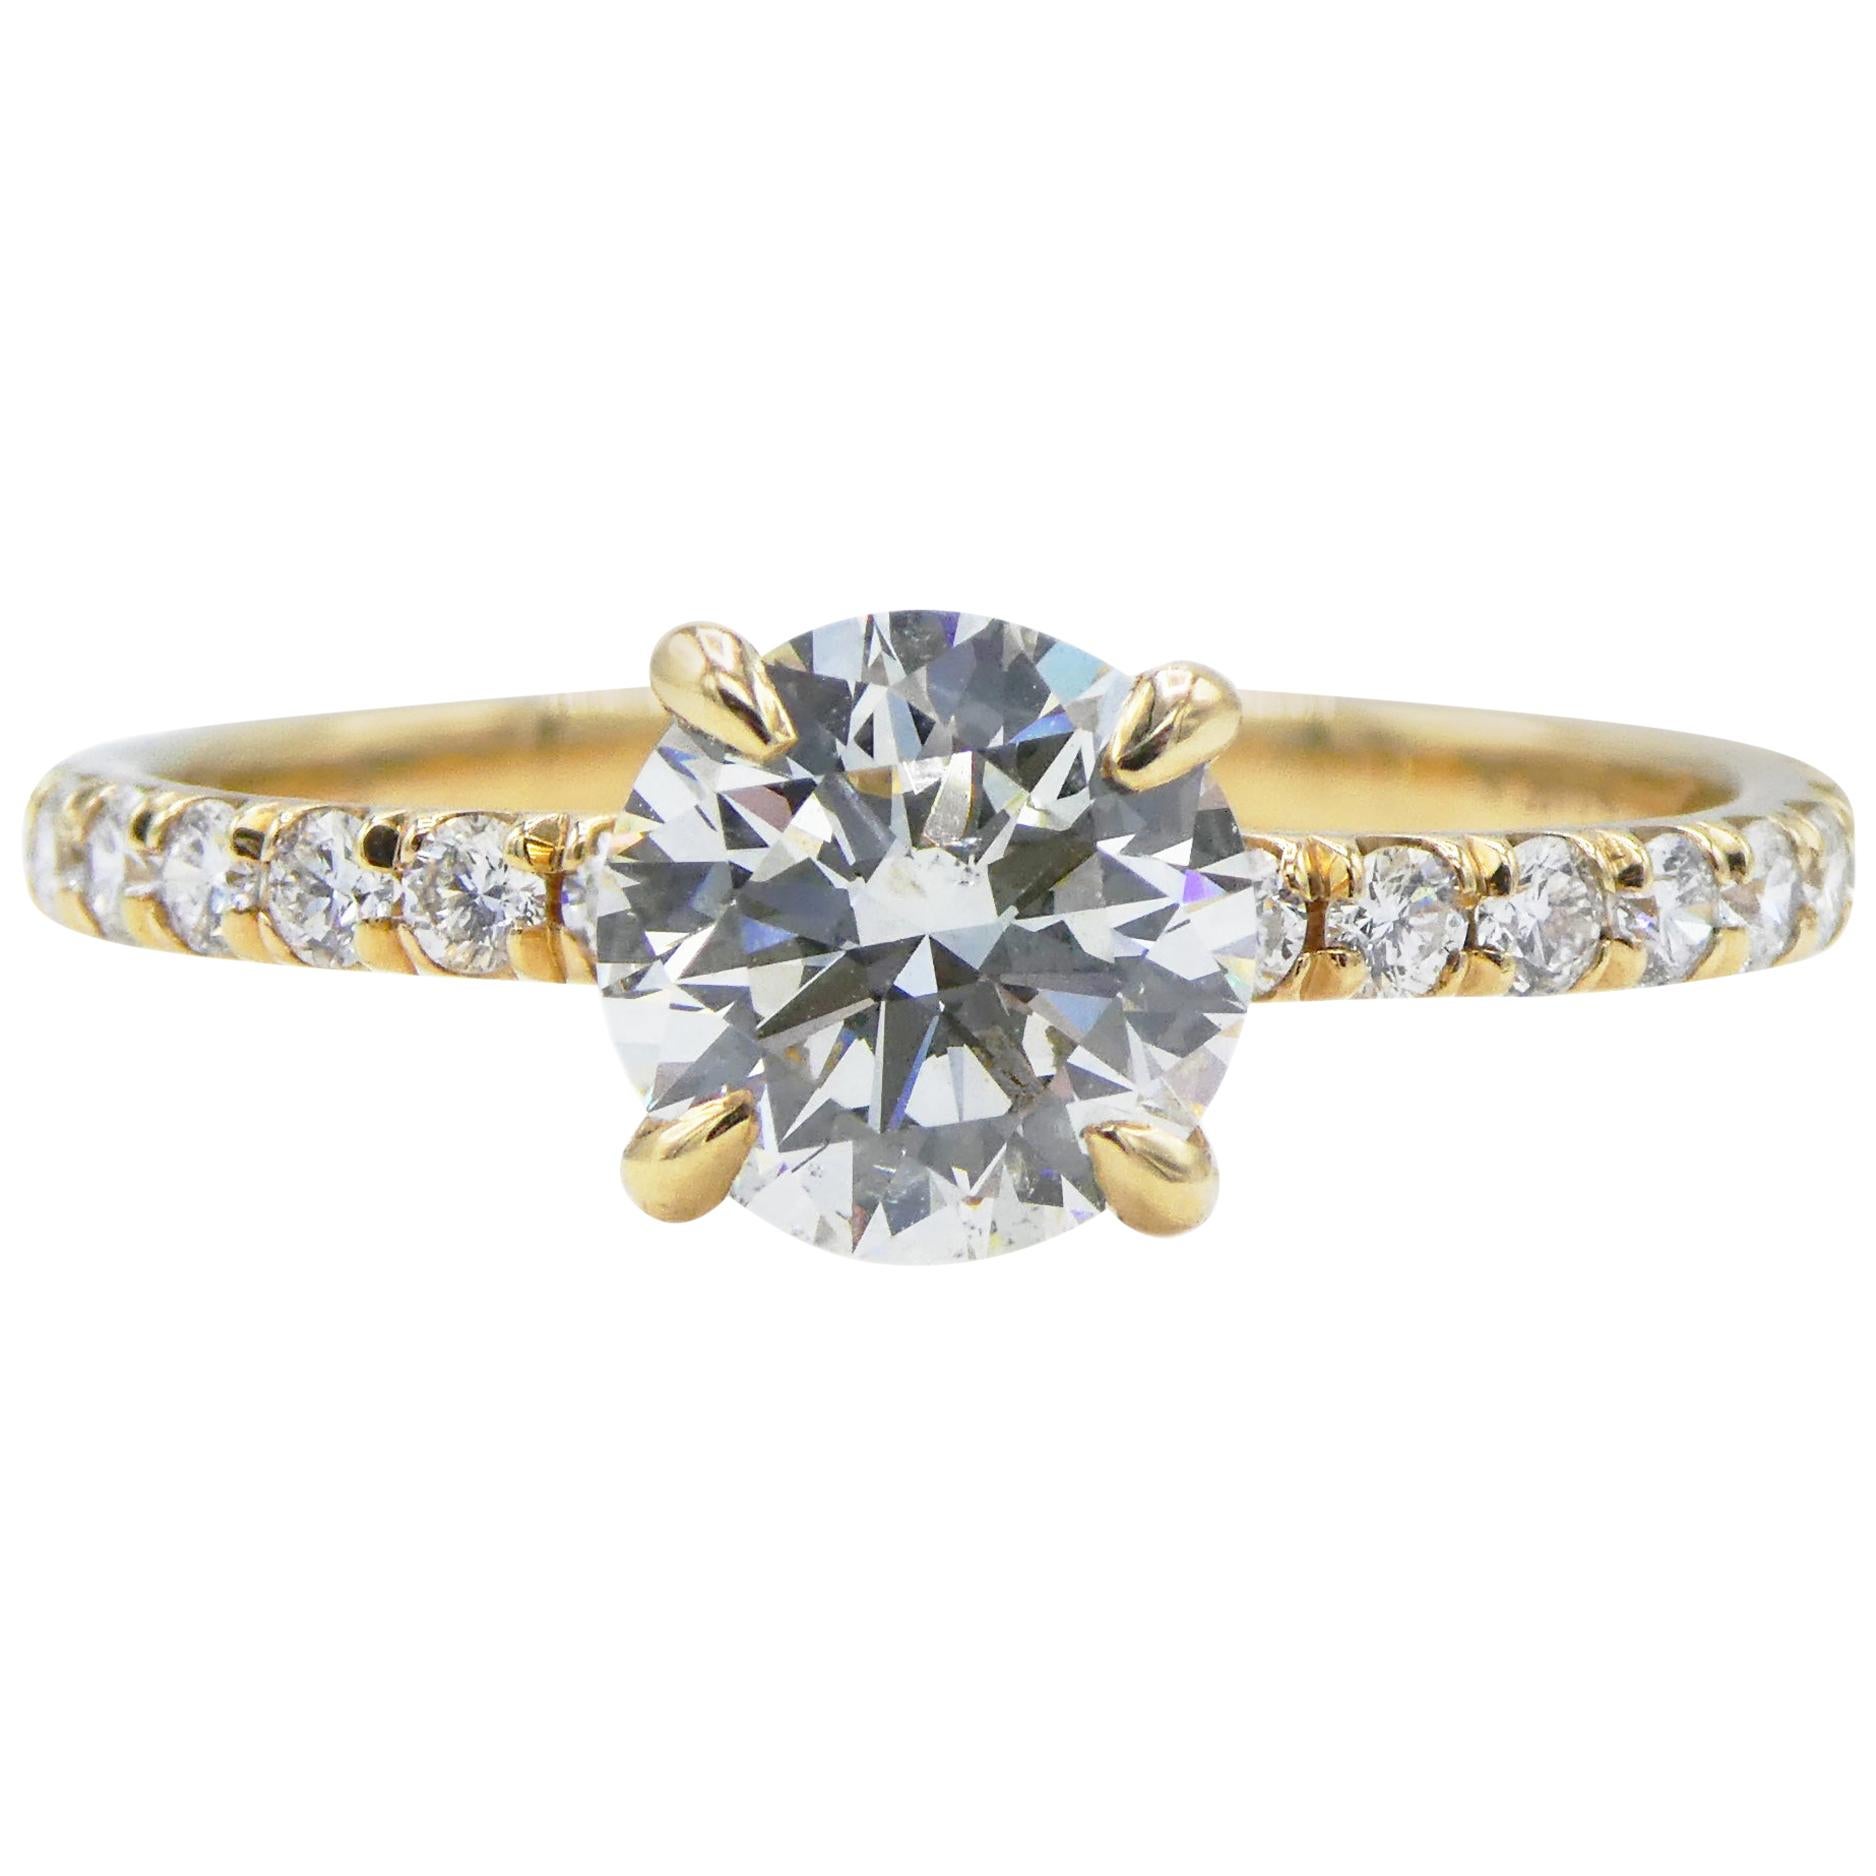 GIA Certified 1.01 Carat Round Diamond Pave 14 Karat Yellow Gold Engagement Ring